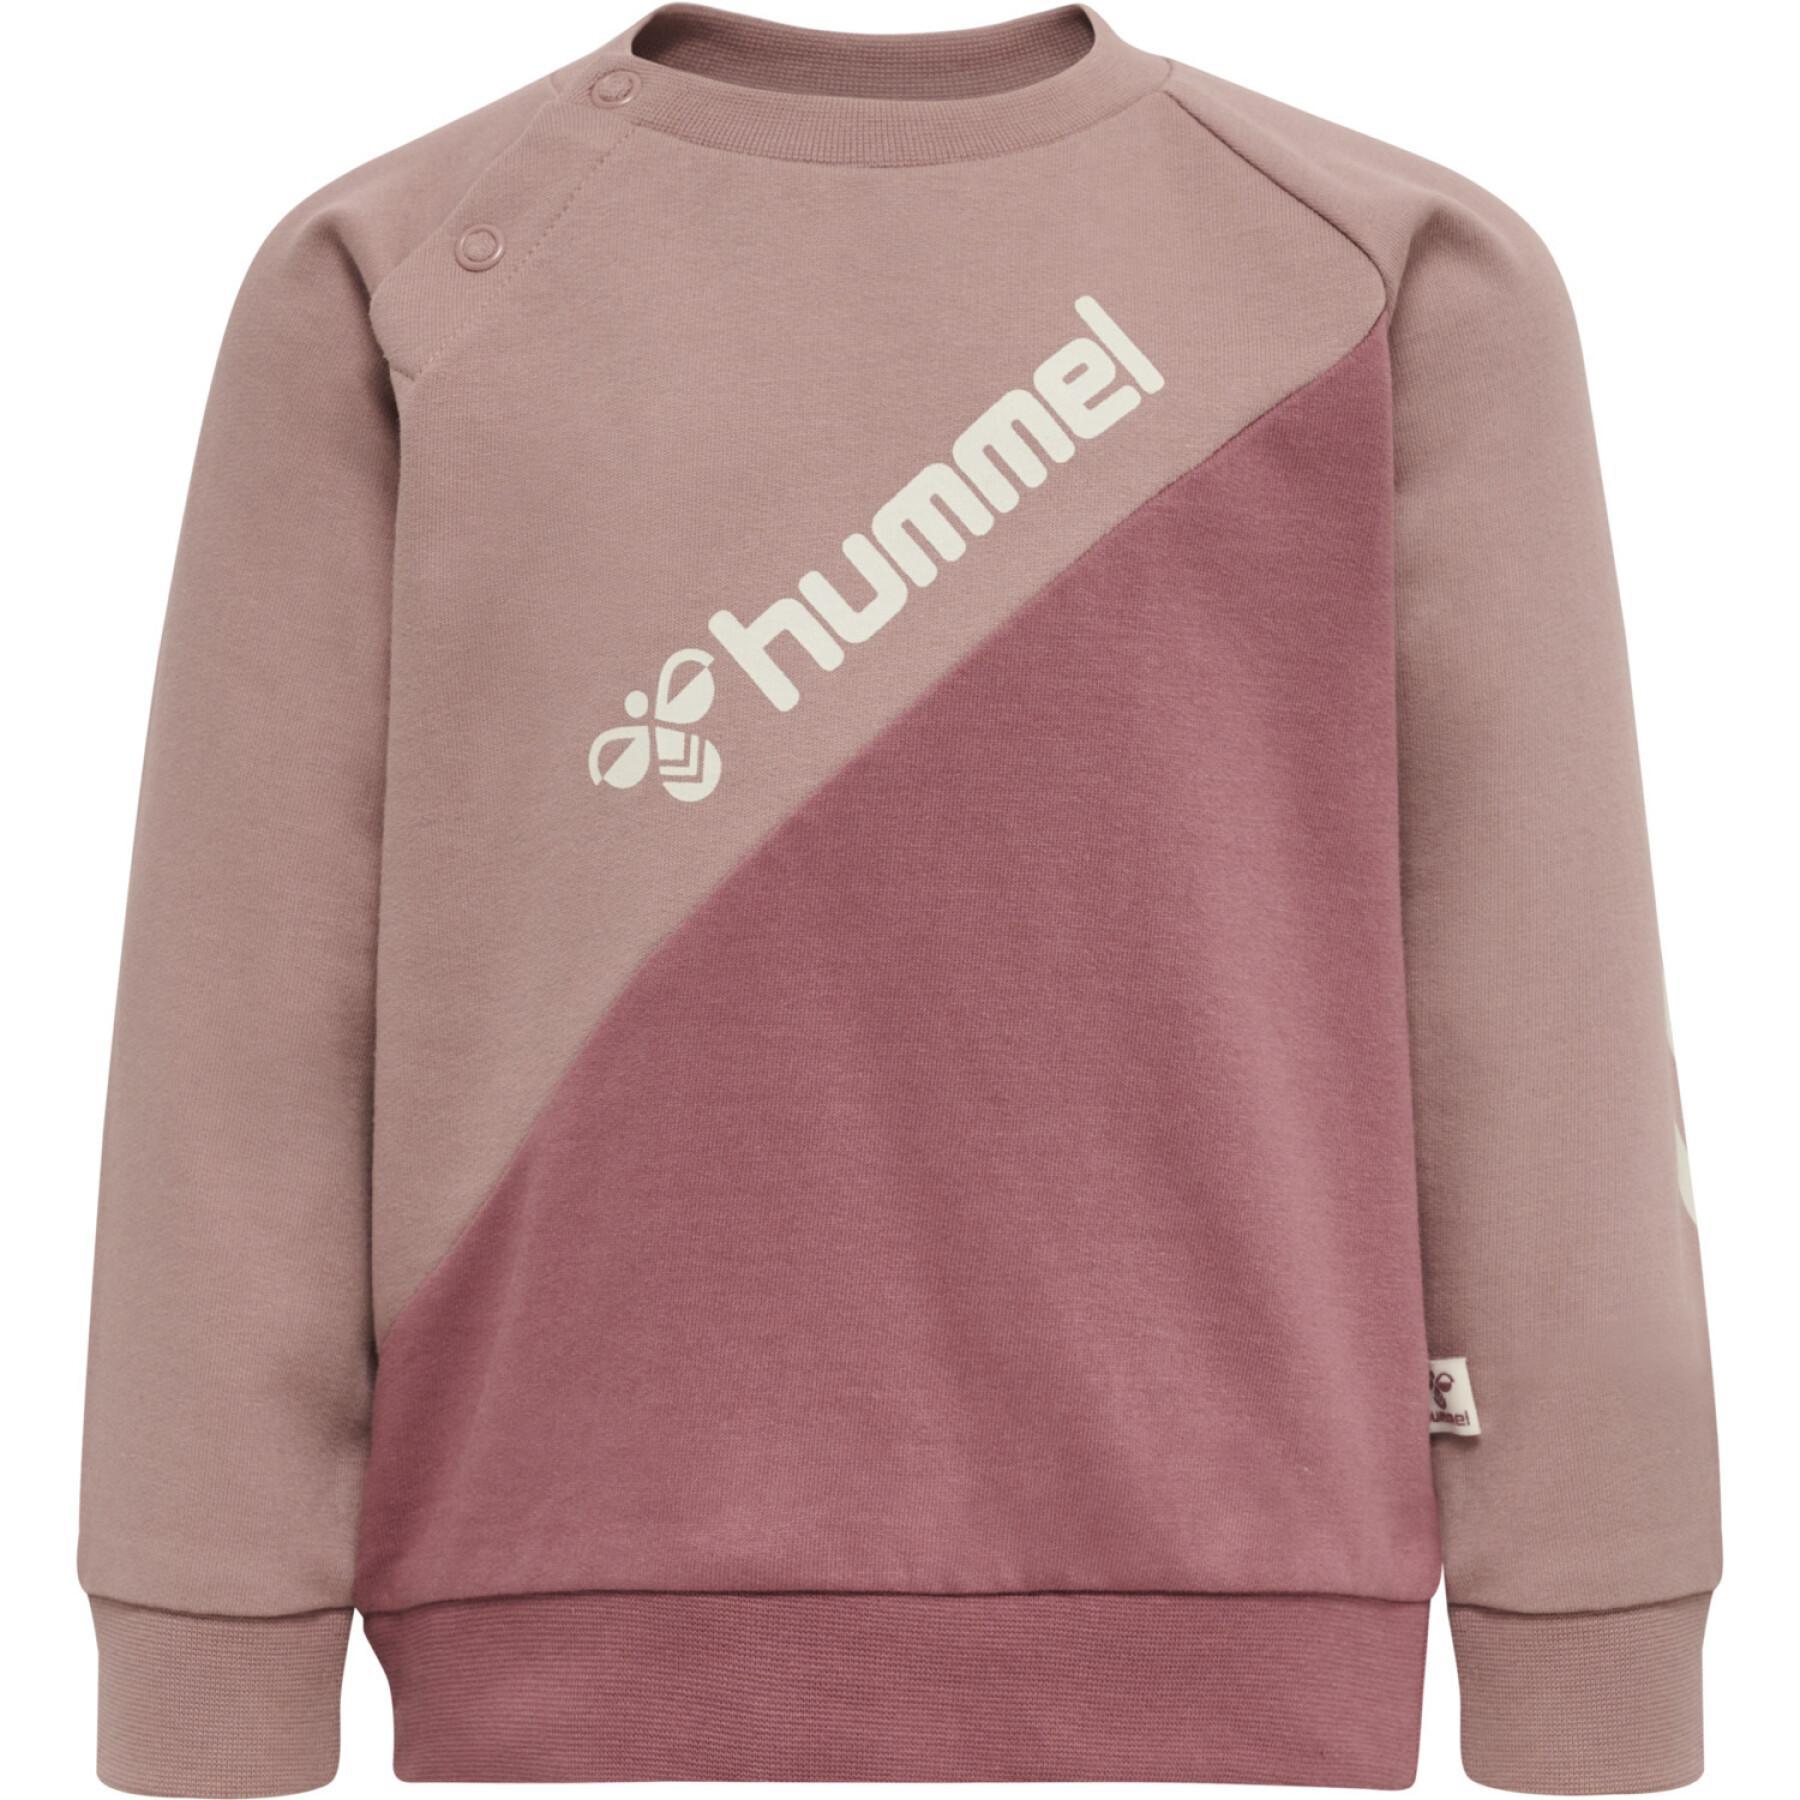 Bluza dla dziecka Hummel Sportive